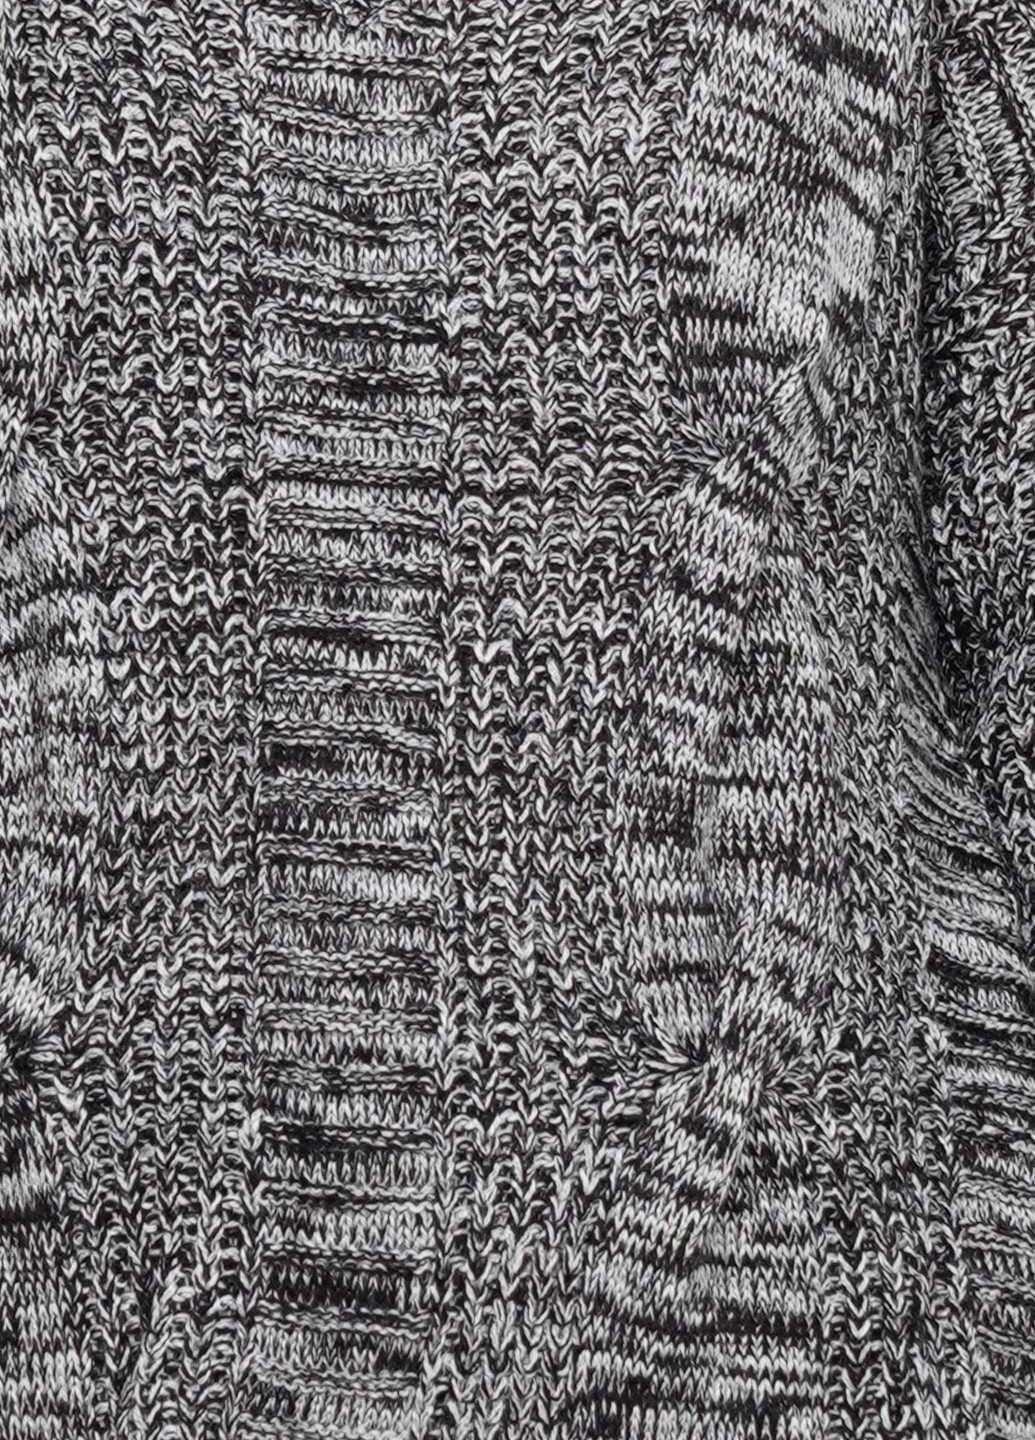 Серый демисезонный пуловер пуловер CHD